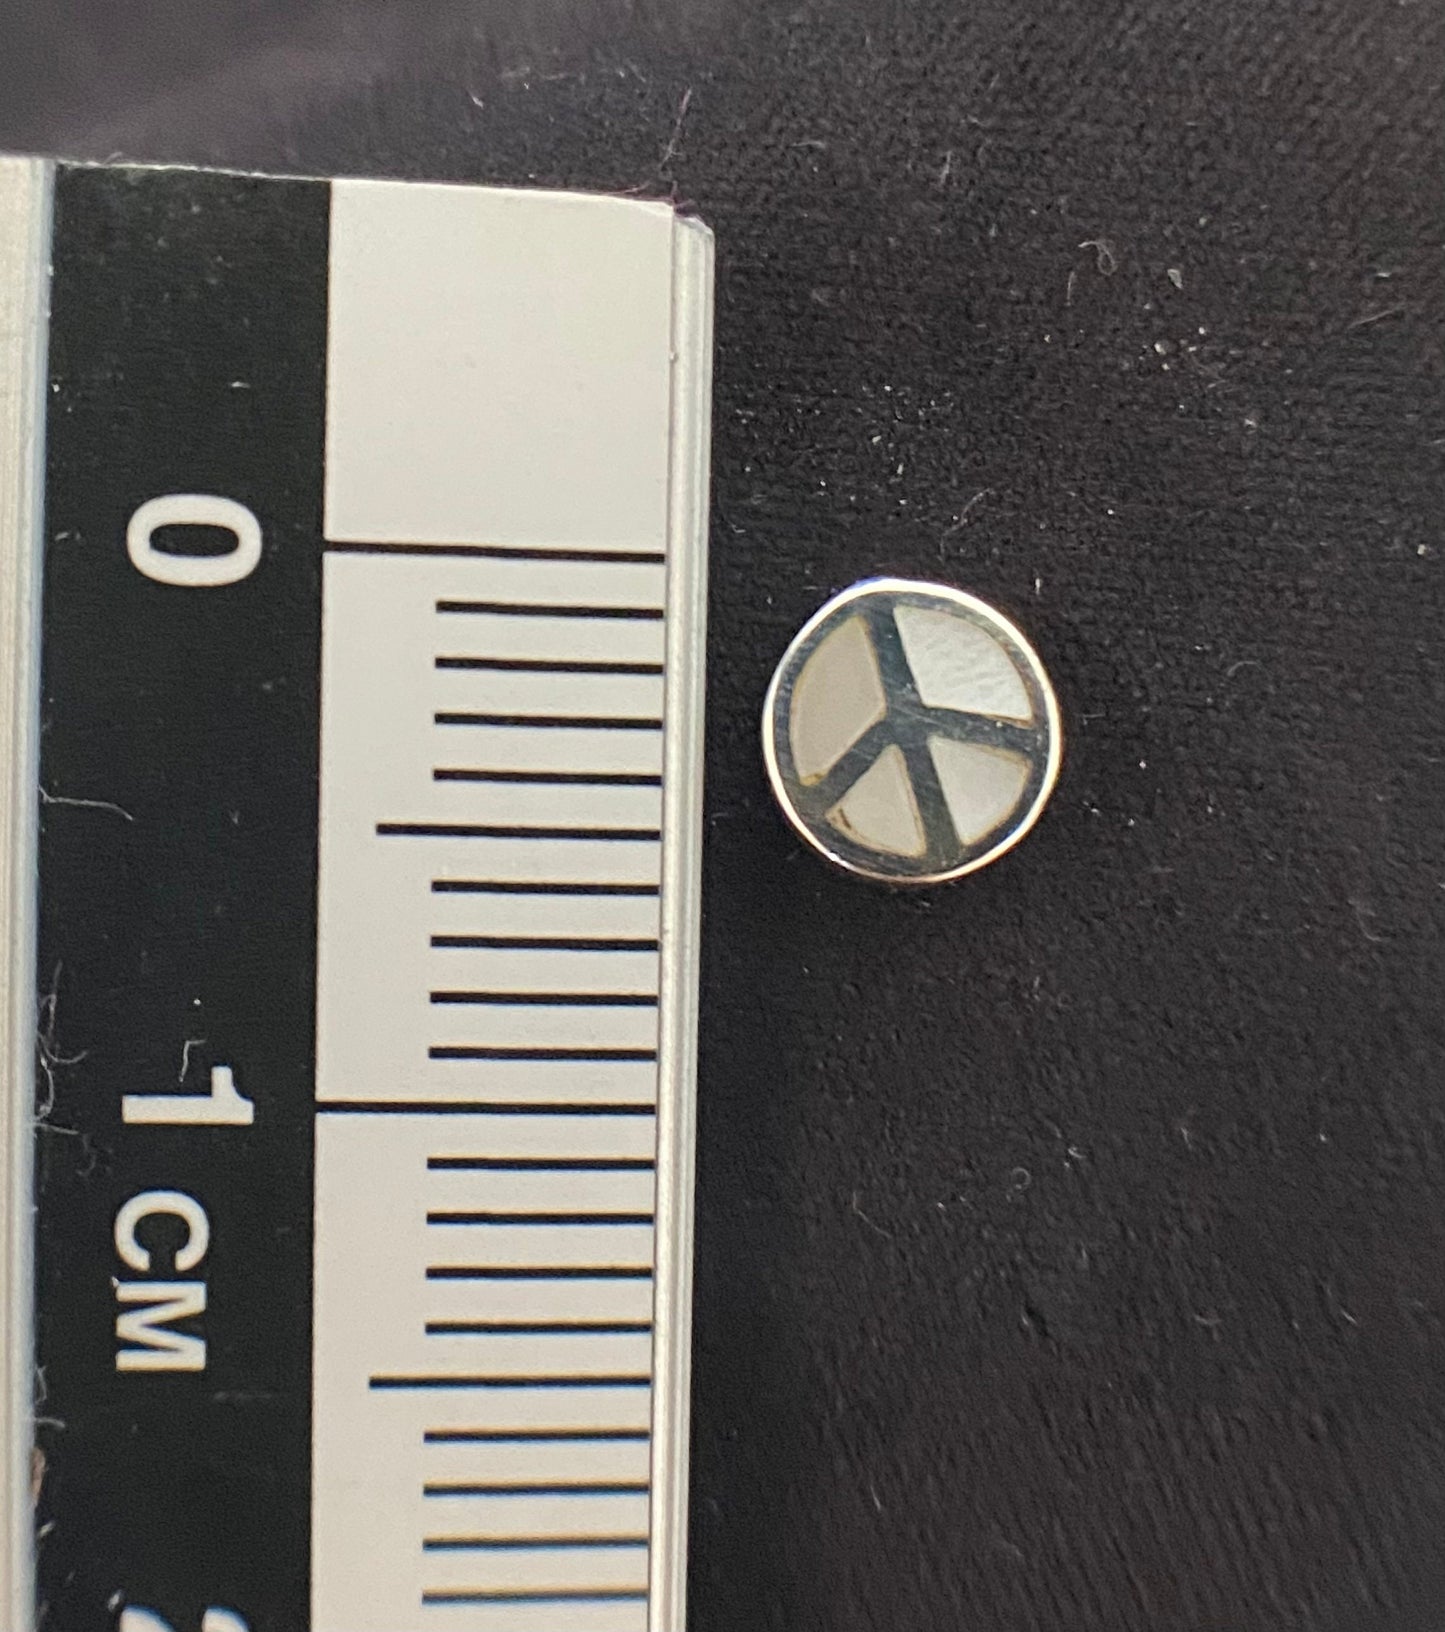 Tiny nacre peace sign earrings Sterling Silver 925 - TSE060